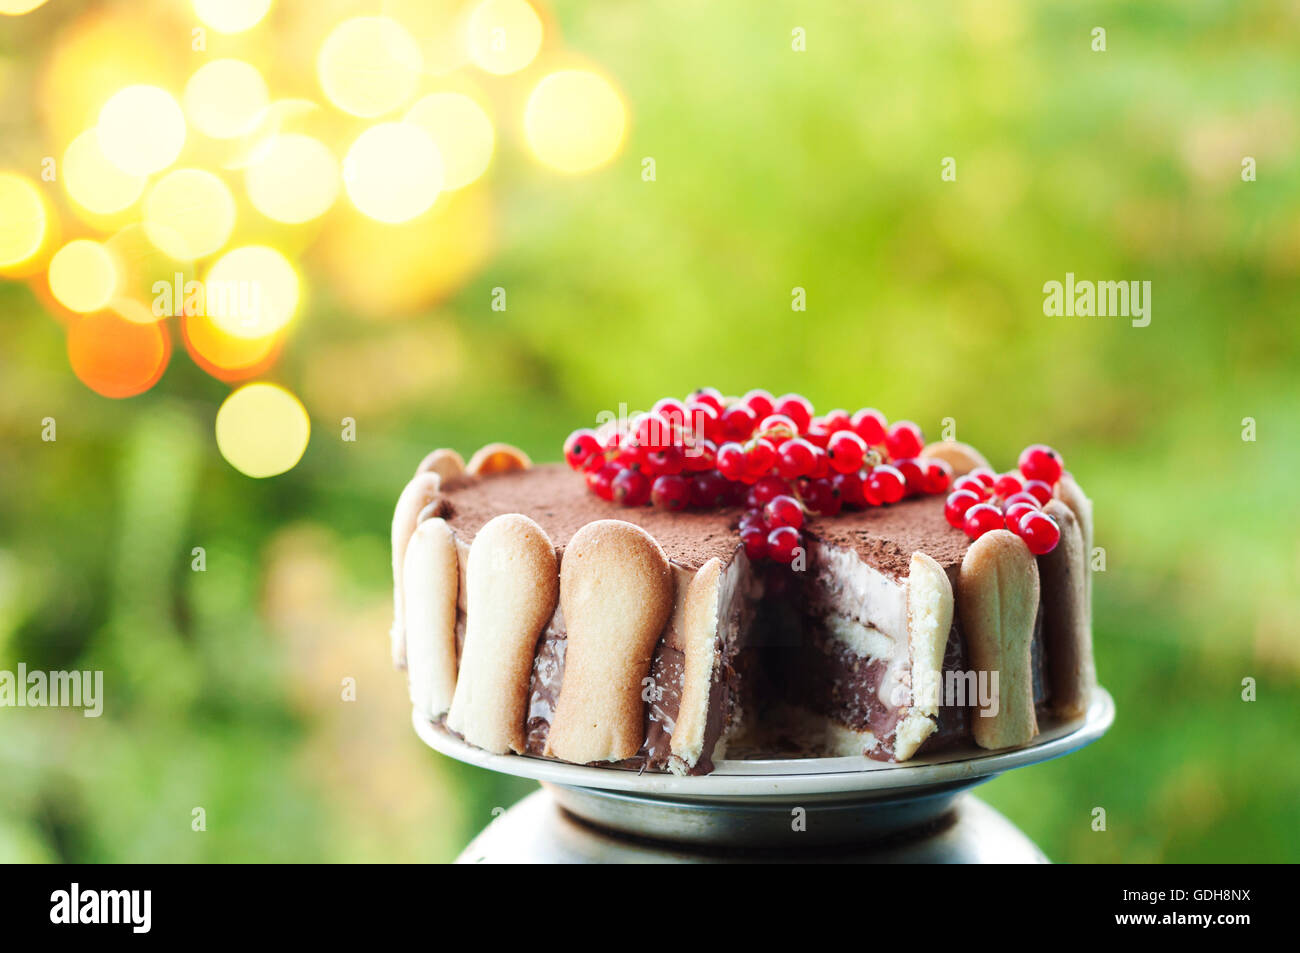 Ice cream tiramisu cake with cranberries Stock Photo